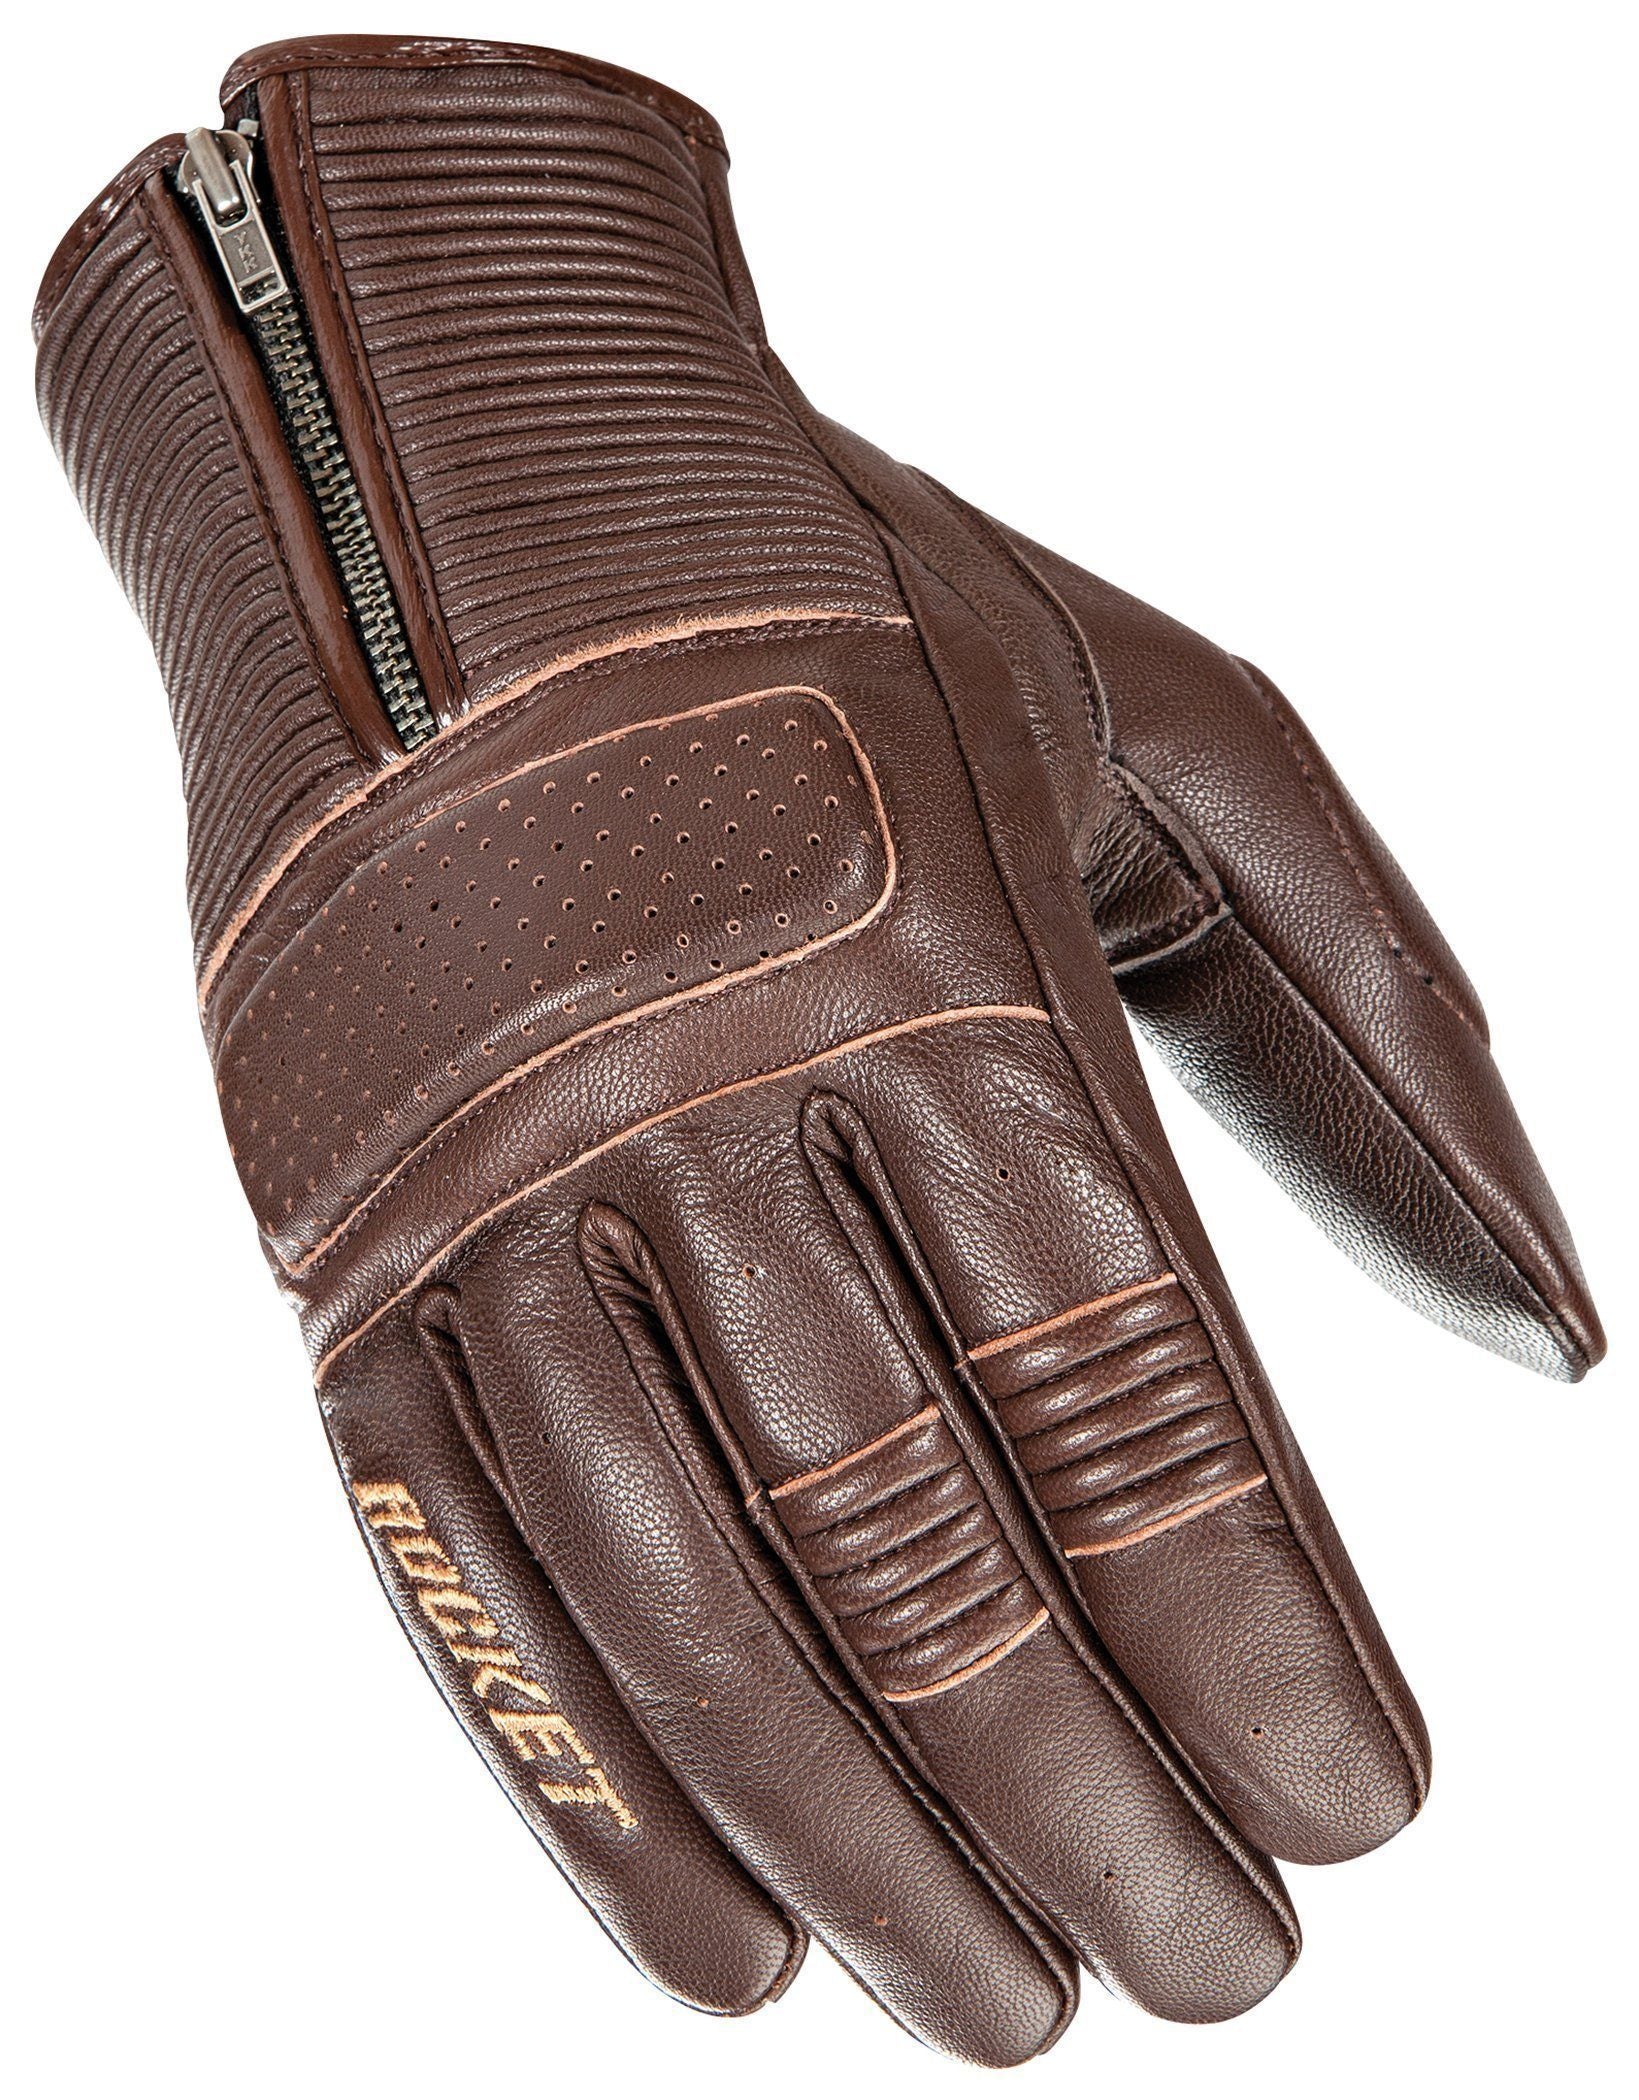 Joe Rocket Cafe Racer Men's Brown Leather Gloves